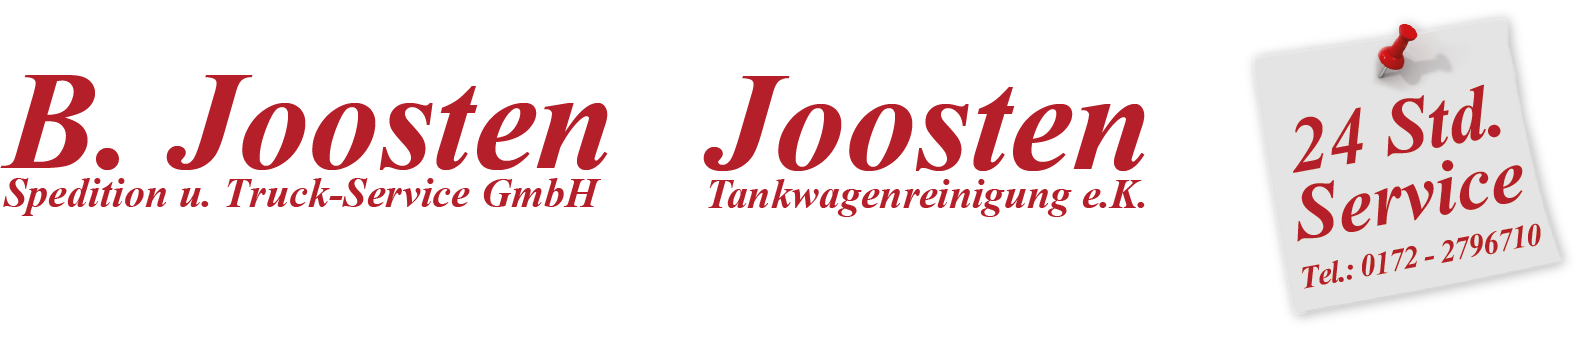 B. Joosten / Joosten Tankwagenreinigung